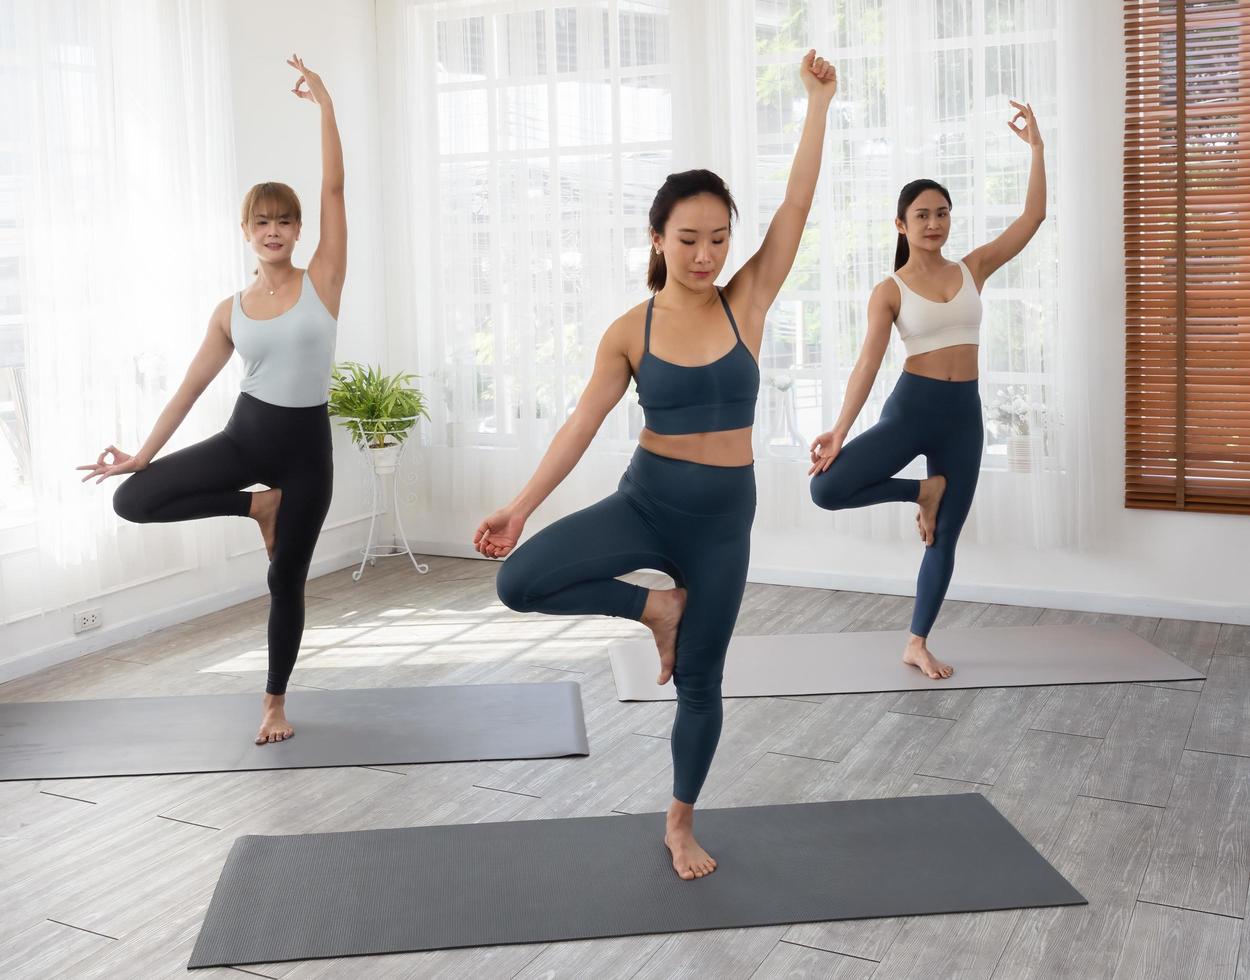 drie aantrekkelijke mooie aziatische vrouwen oefenen de pose tijdens hun yogales in een sportschool. twee vrouwen beoefenen samen yoga. foto